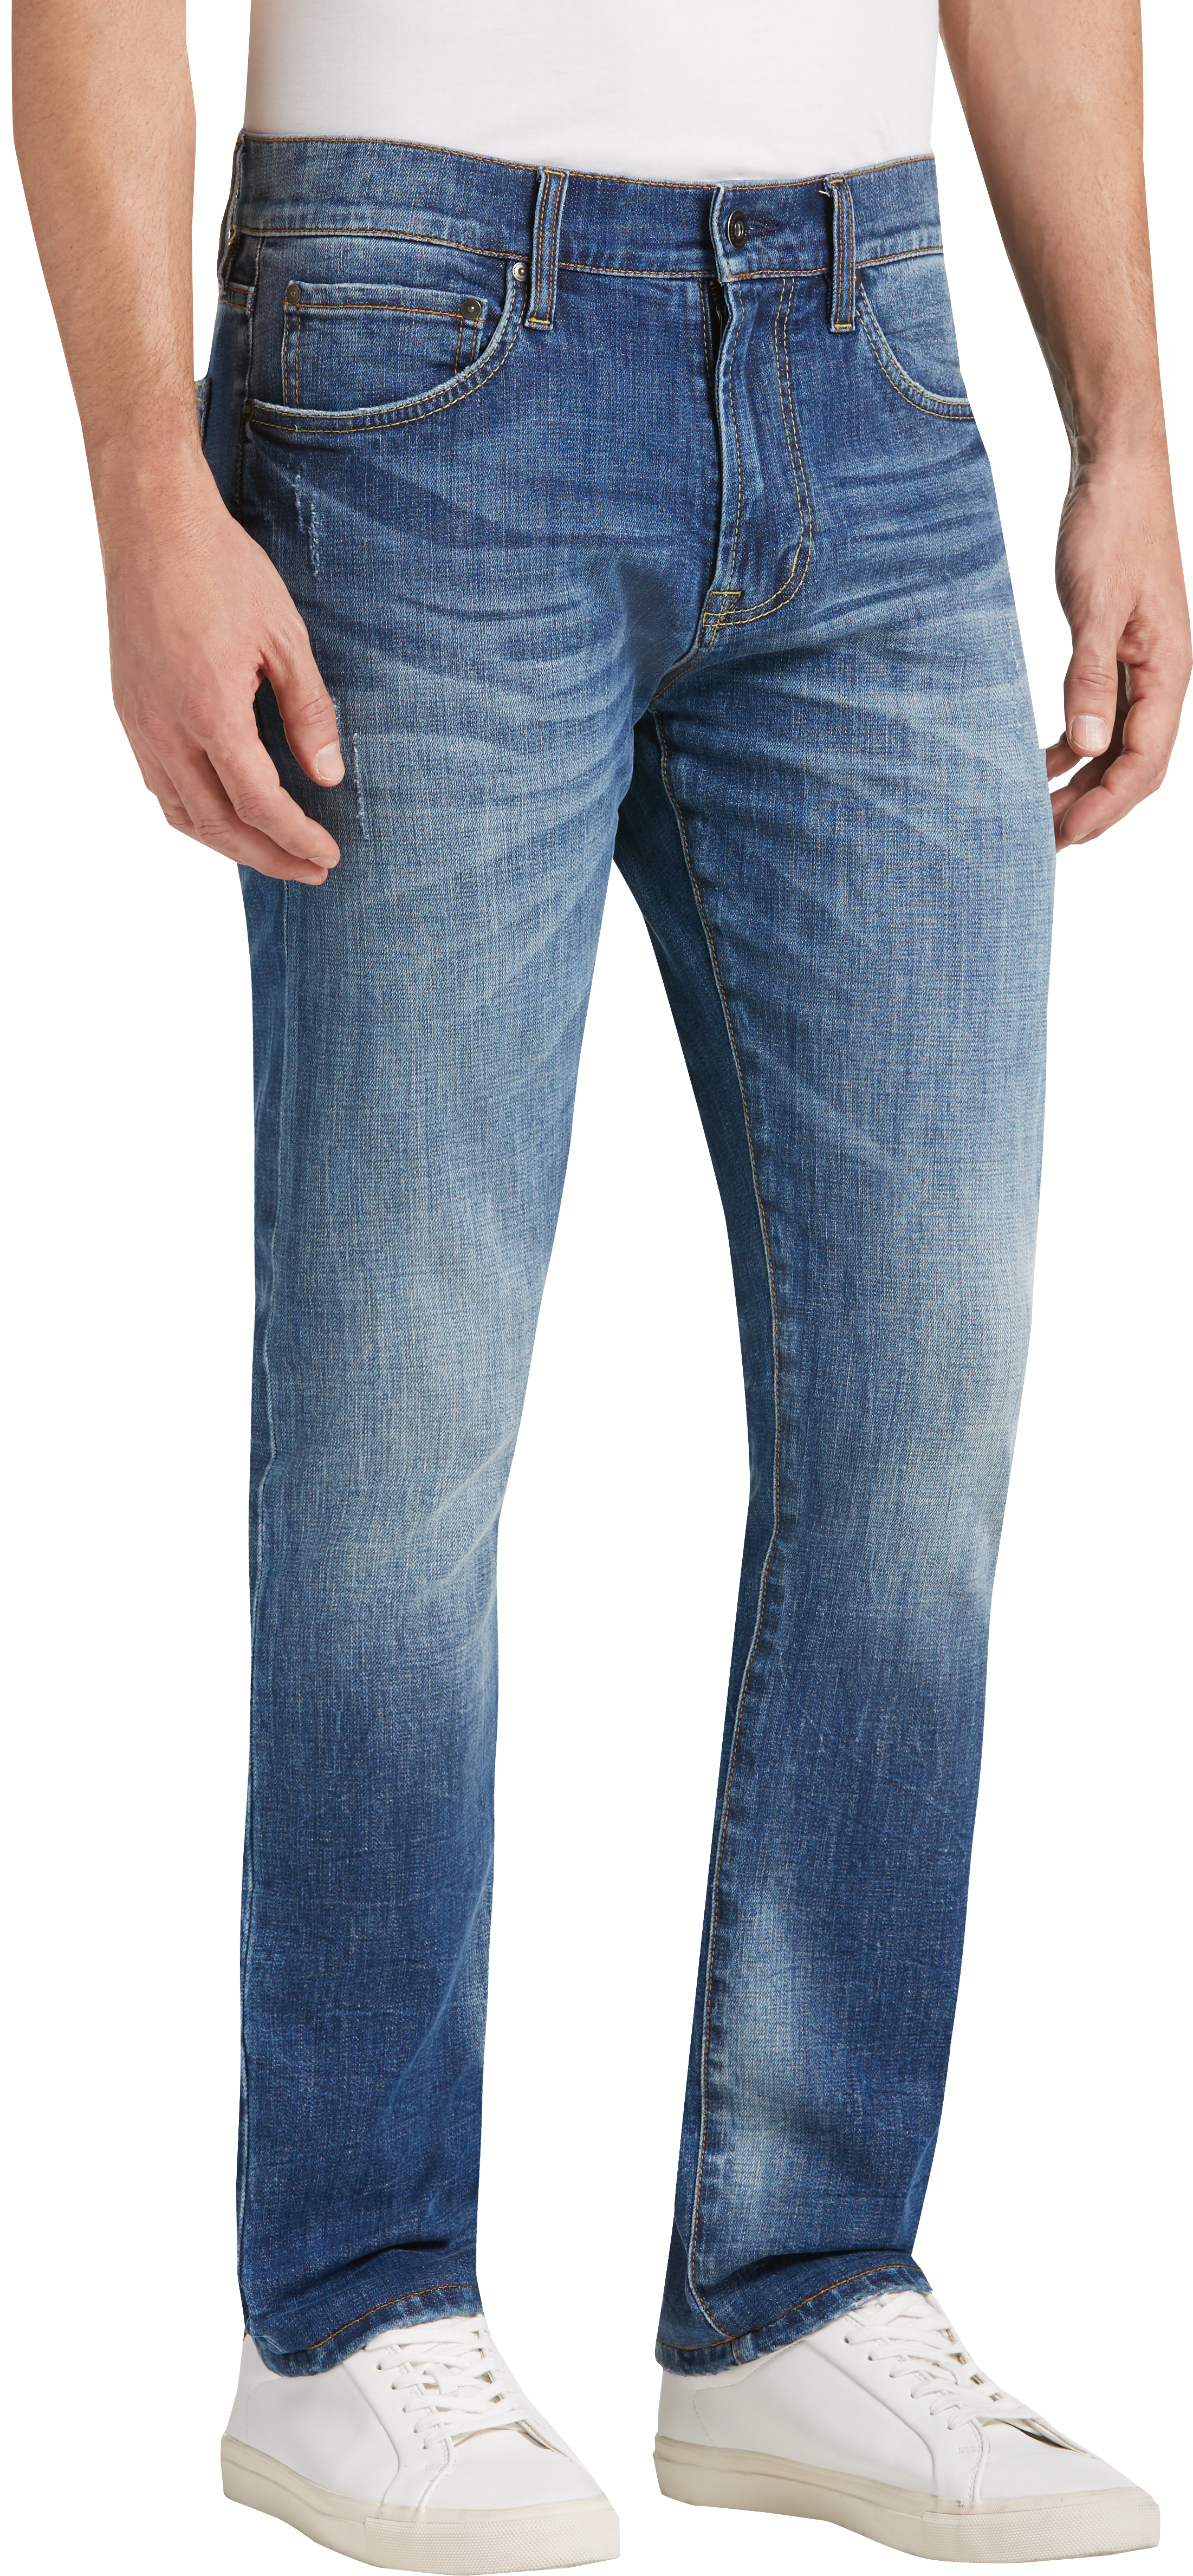 Joseph Abboud Blue Medium Wash Slim Fit Jeans - Men's Pants | Men's ...